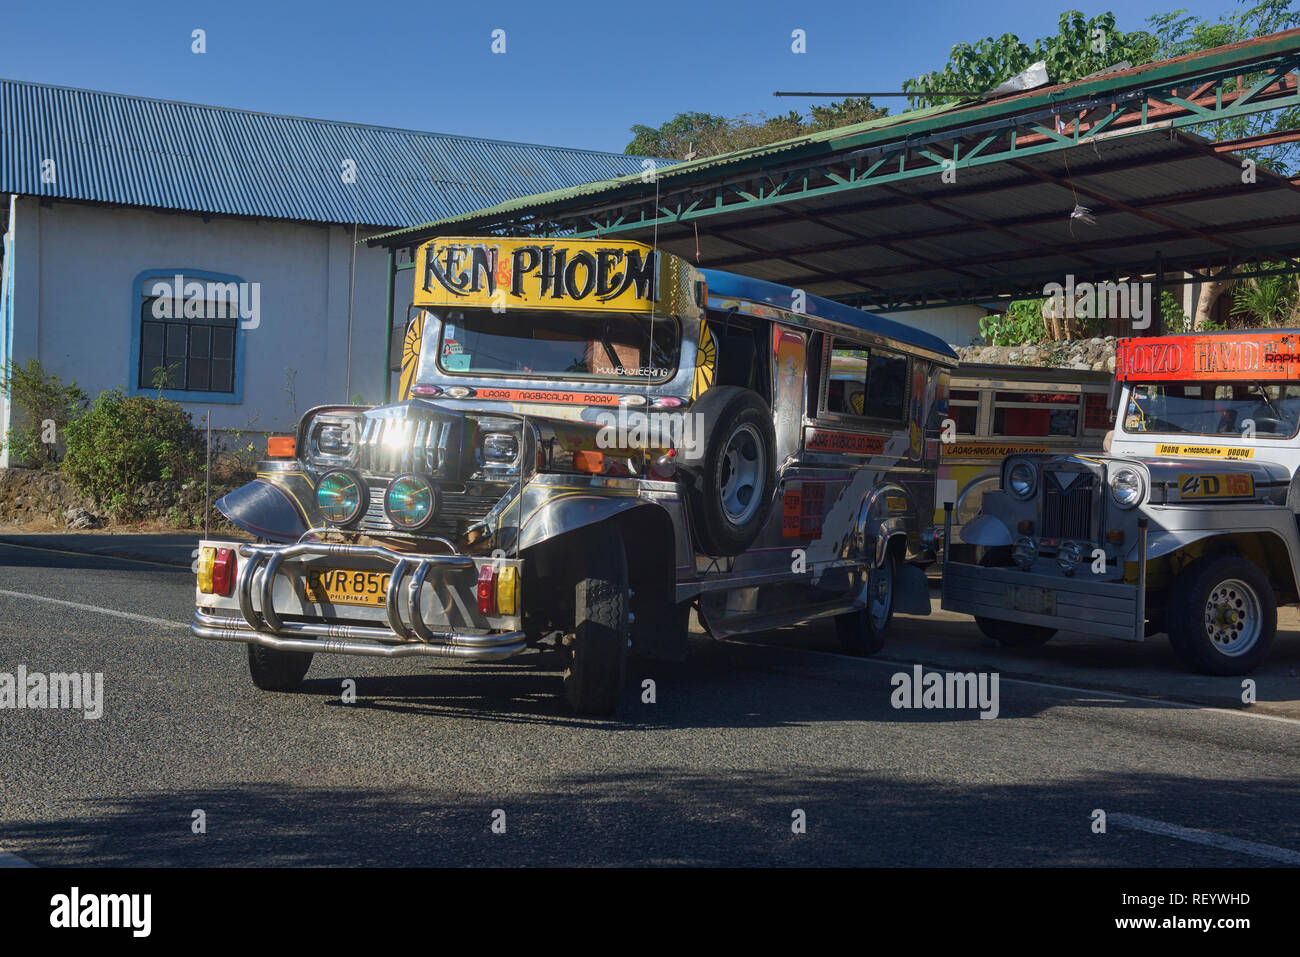 Colorful jeepneys, Laoag, Ilocos Norte, Philippines Stock Photo